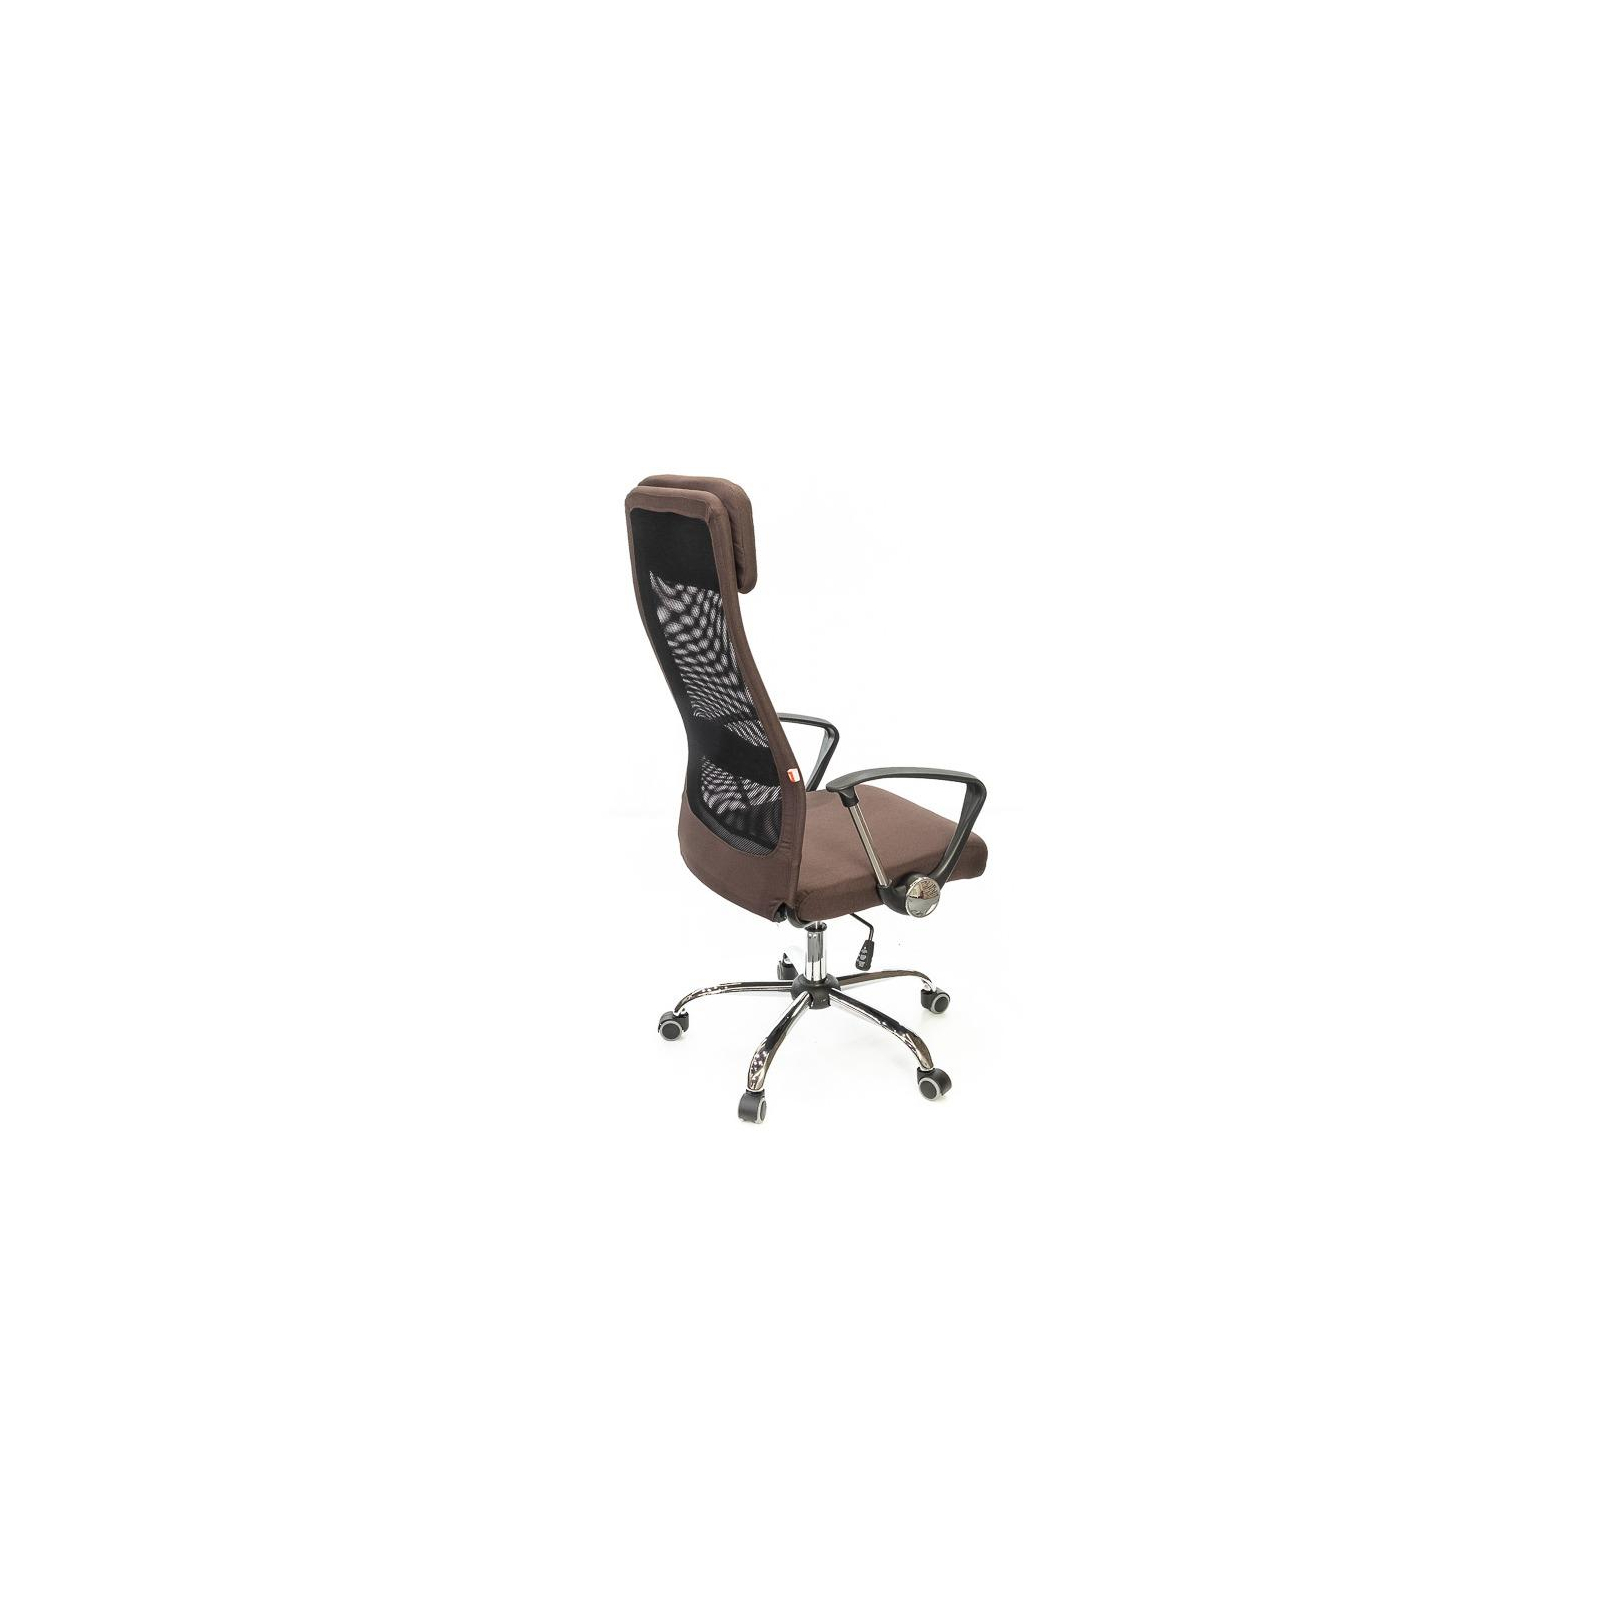 Офисное кресло Аклас Гилмор FX CH TILT Оранжевое (11032) изображение 4